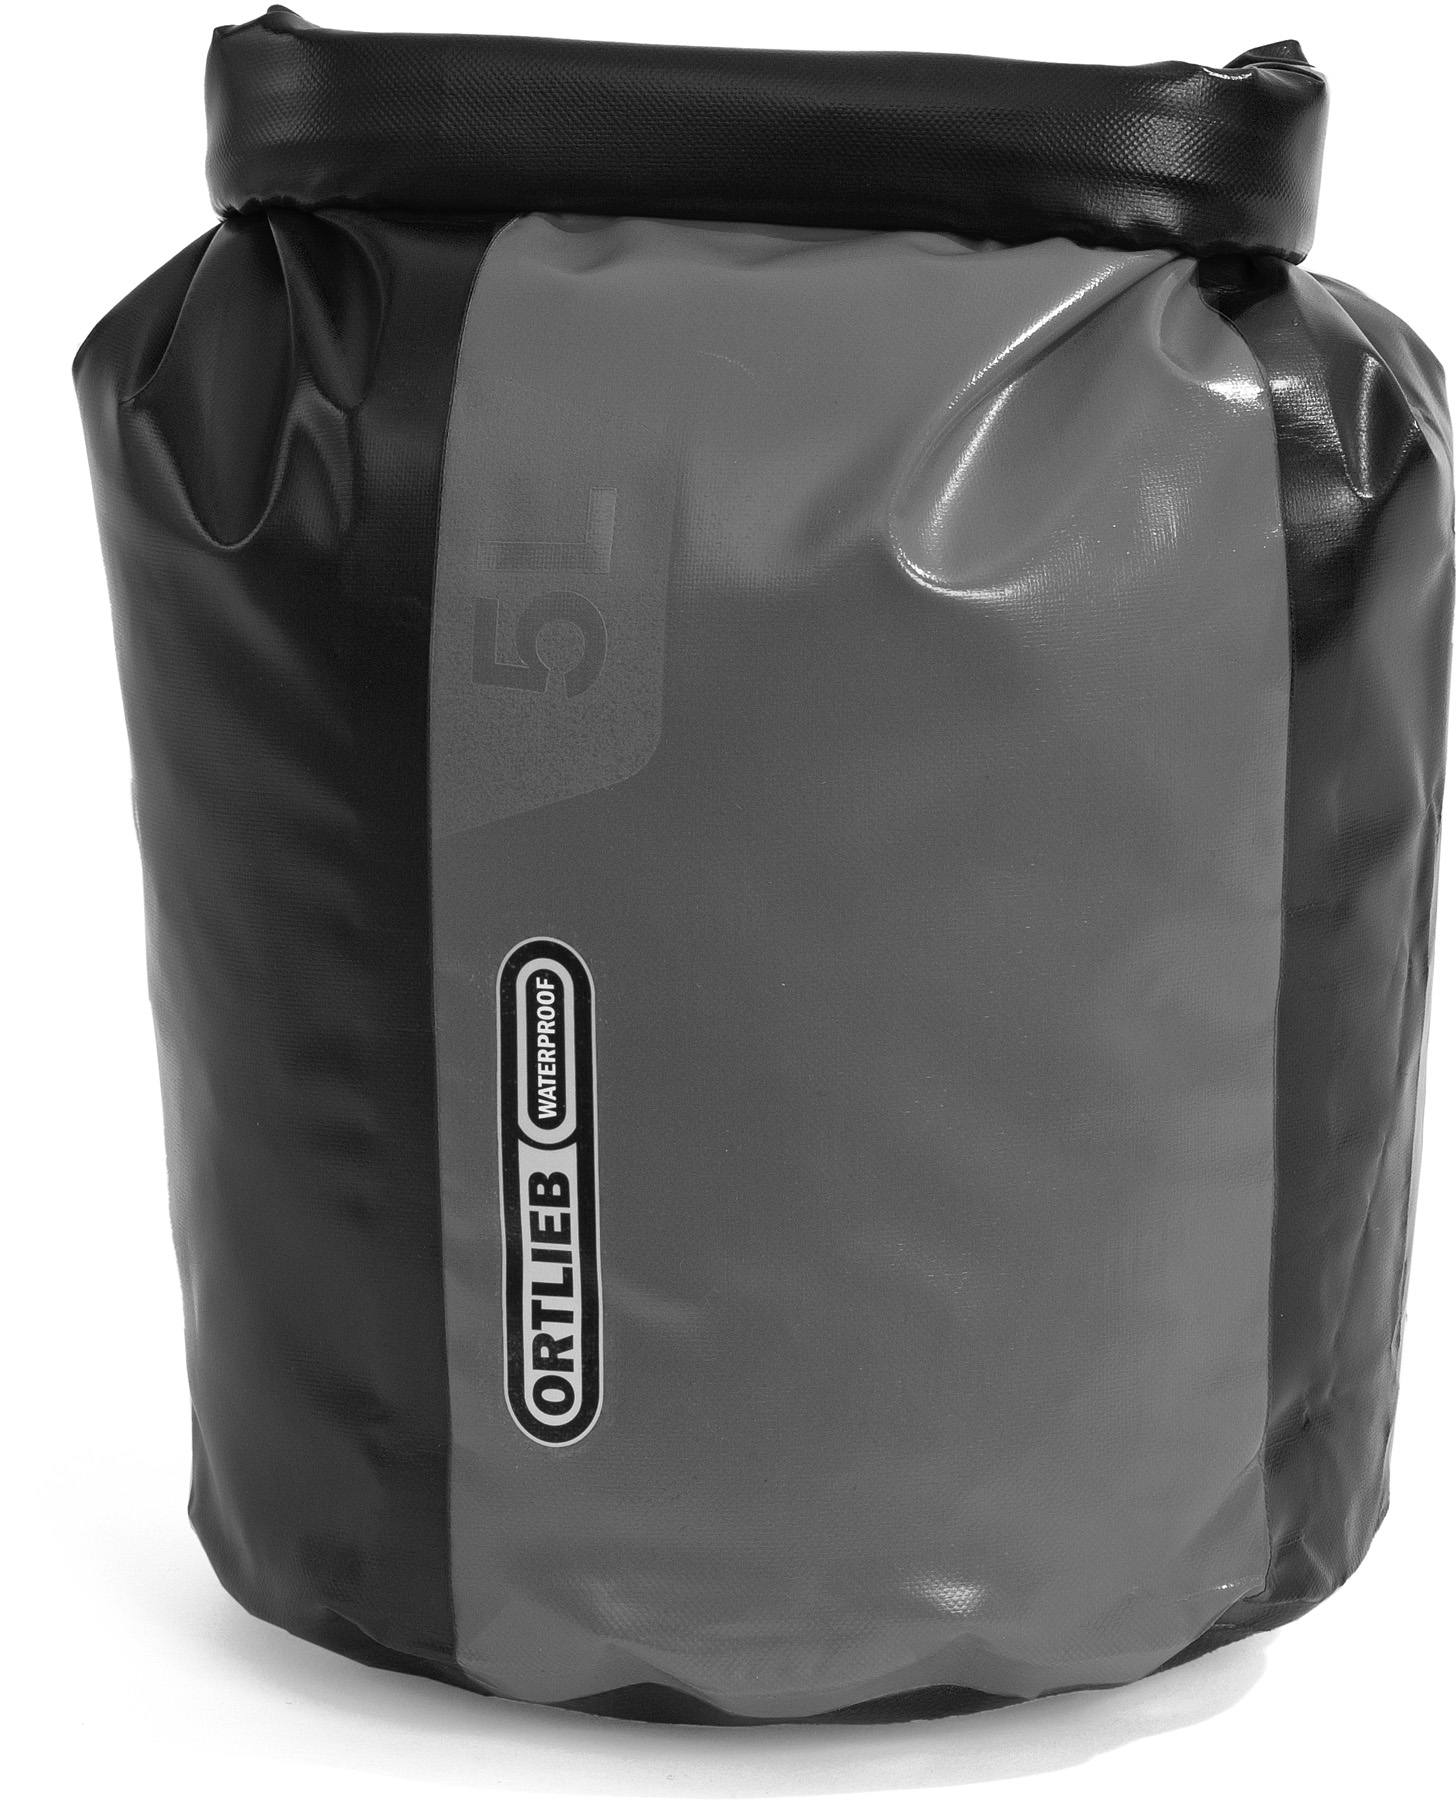 Ortlieb Drybag K4351 7 liters